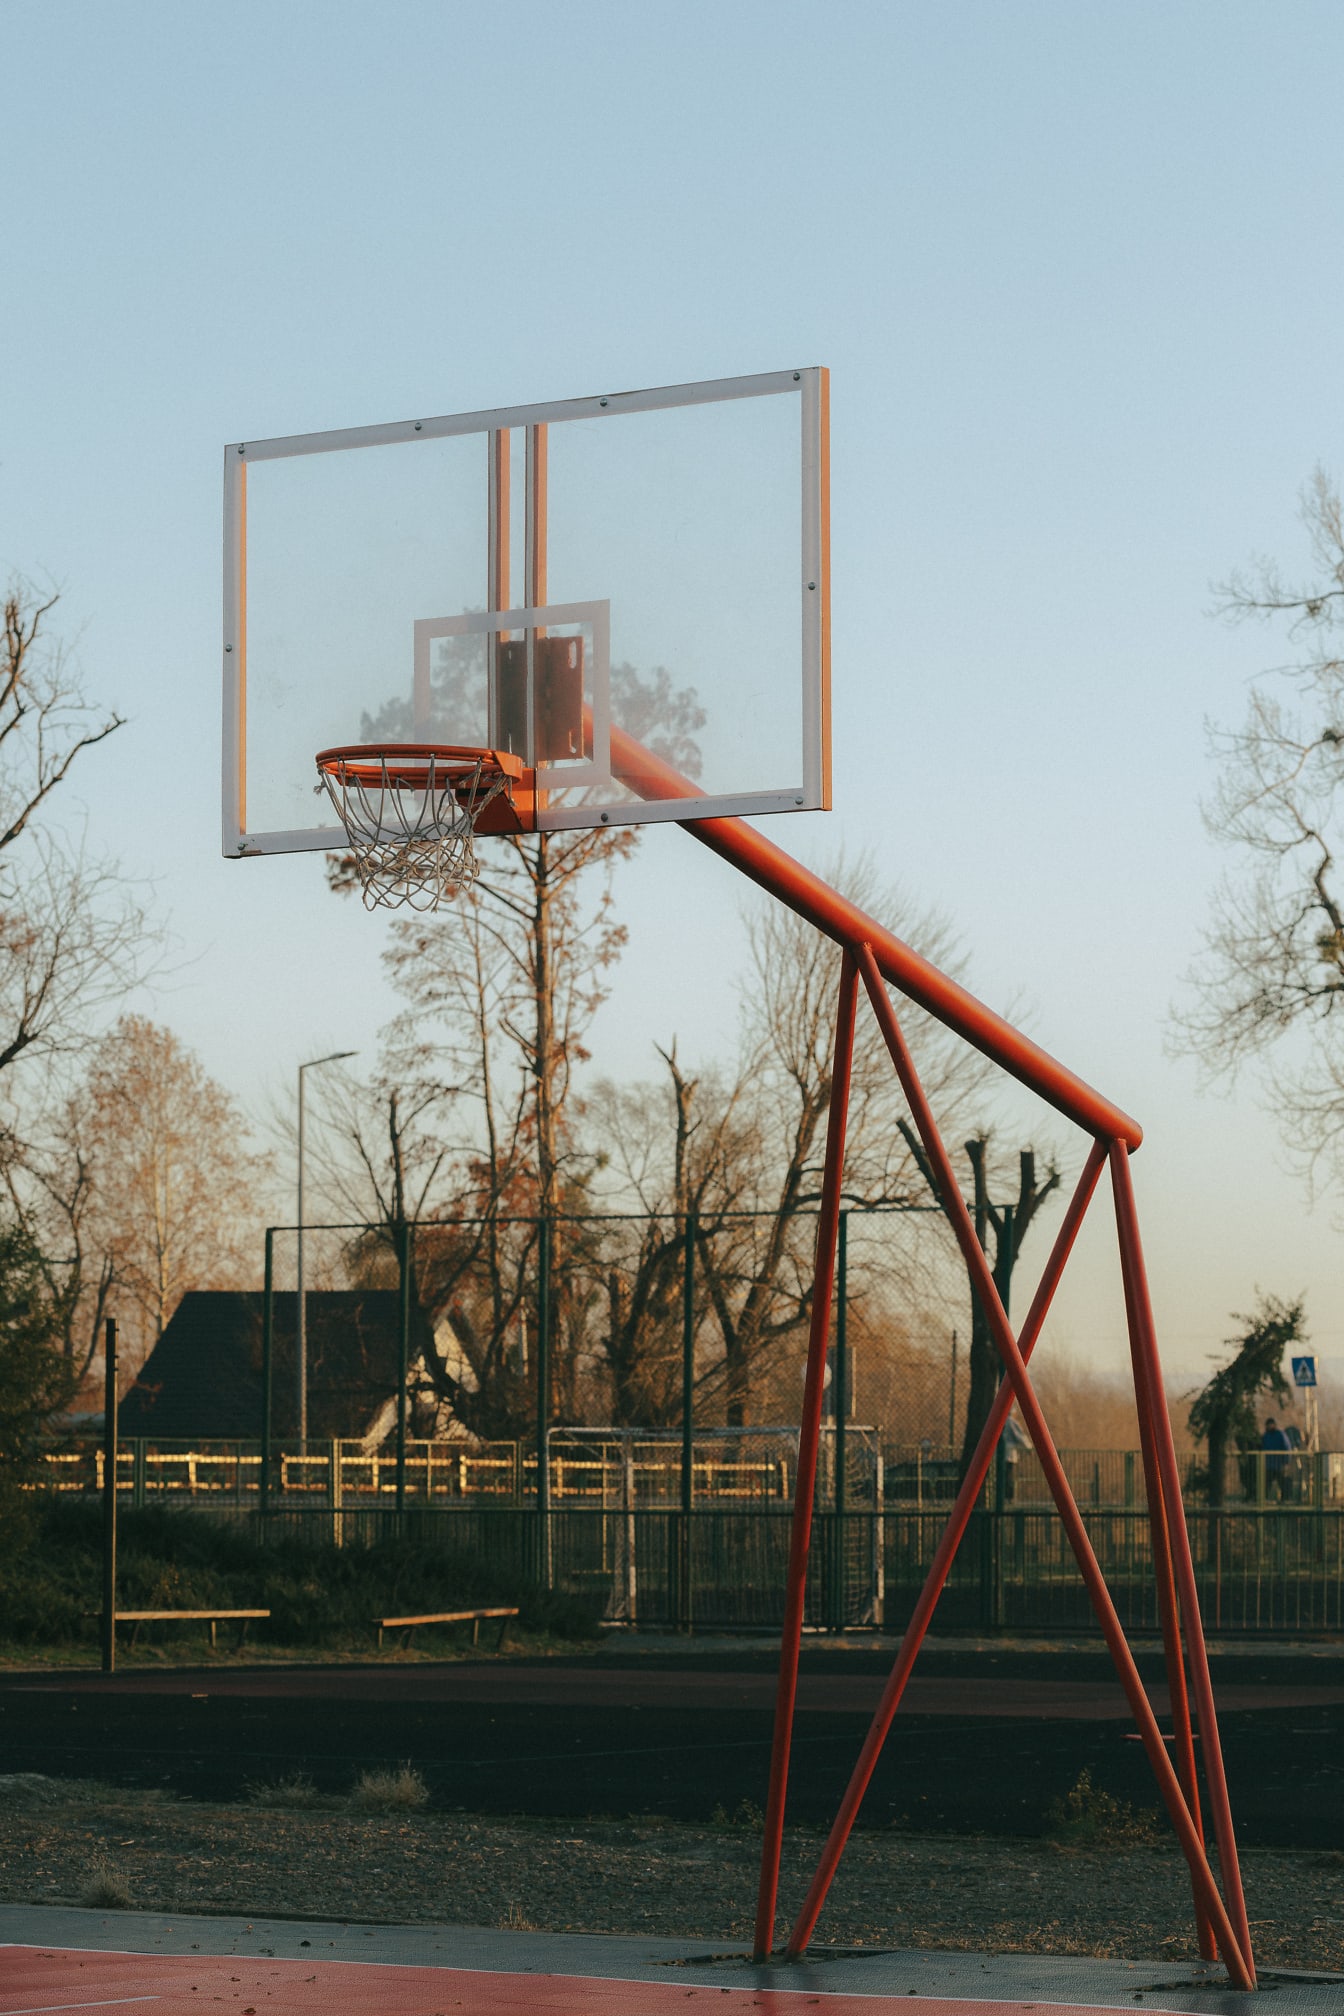 Празно баскетболно игрище с кошница с червеникава метална конструкция